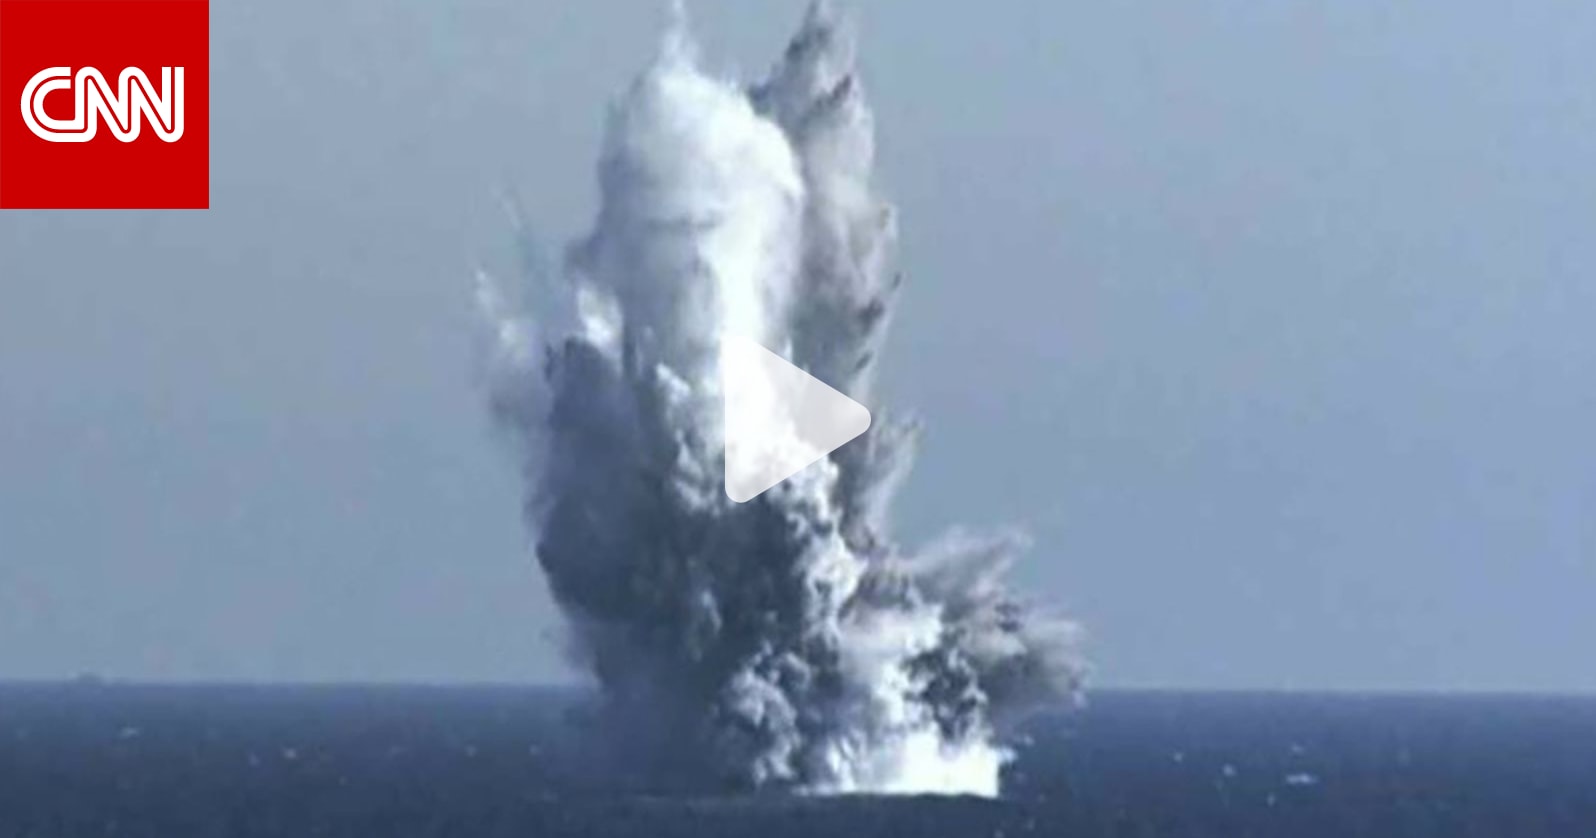 “تُحدث تسونامي إشعاعي“.. شاهد كوريا الشمالية تختبر مسيّرة تحت الماء قادرة على شن هجوم نووي